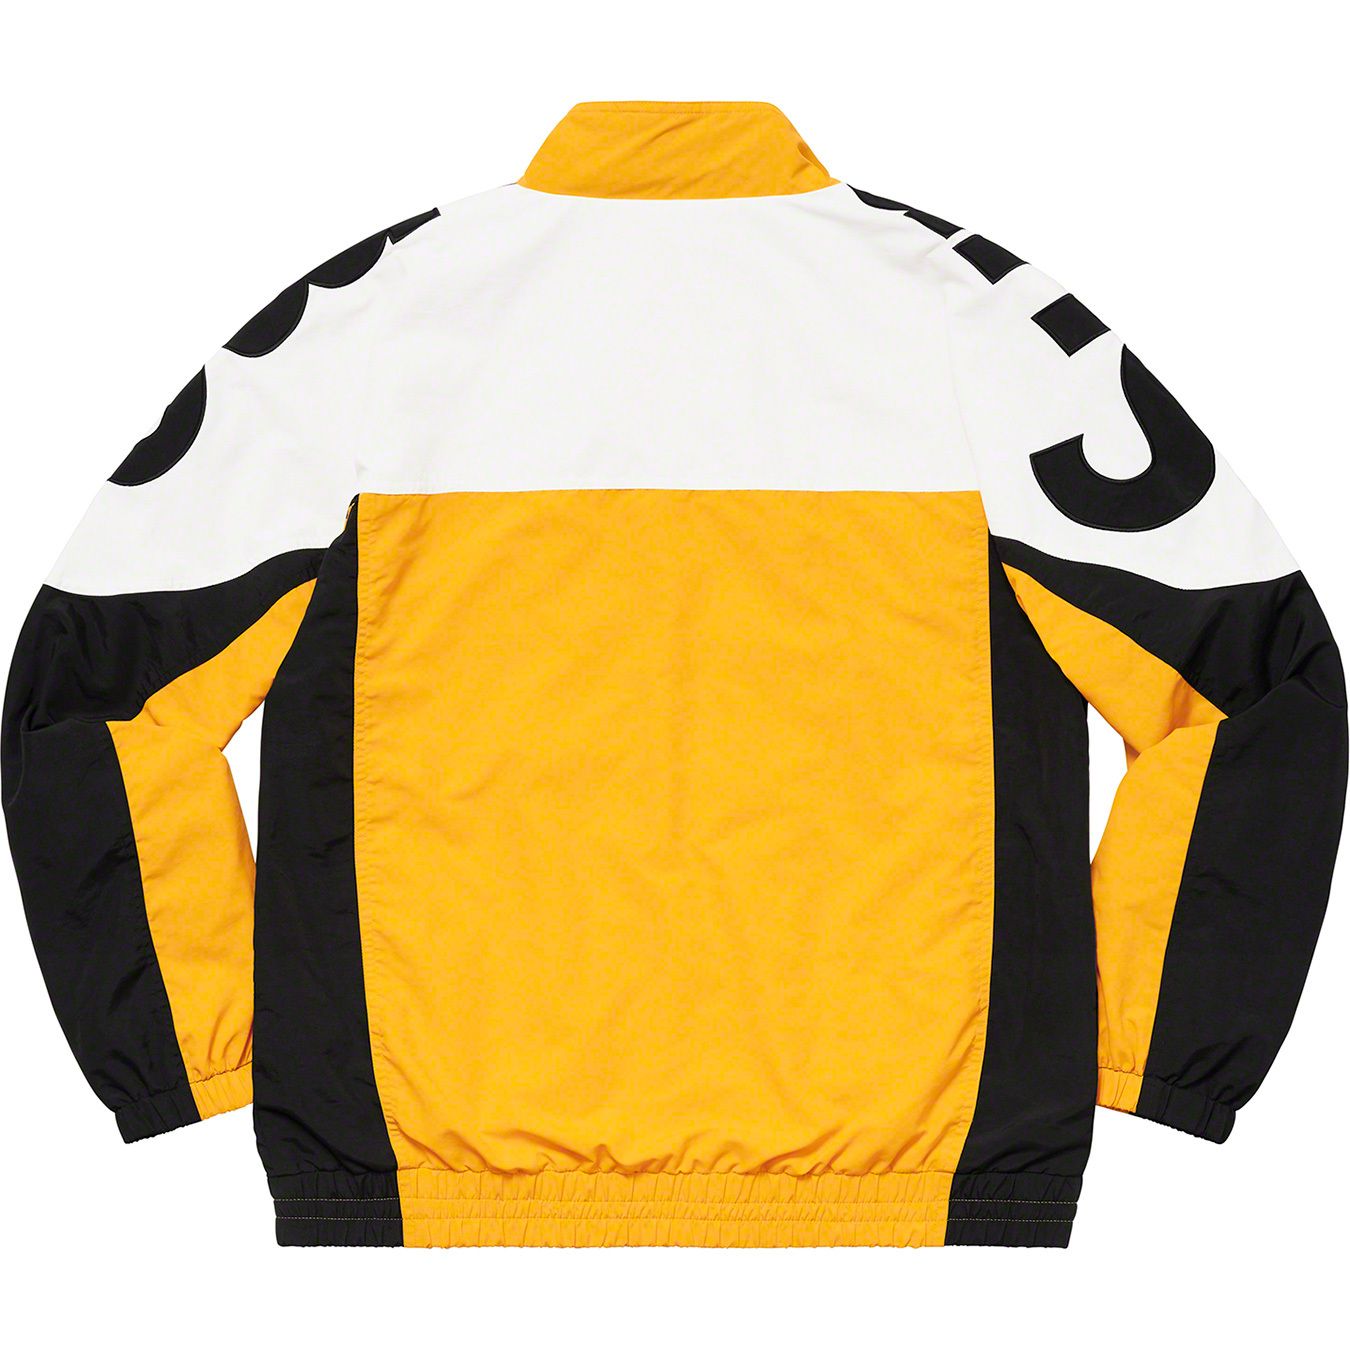 supreme track jacketshoulder logo L gold